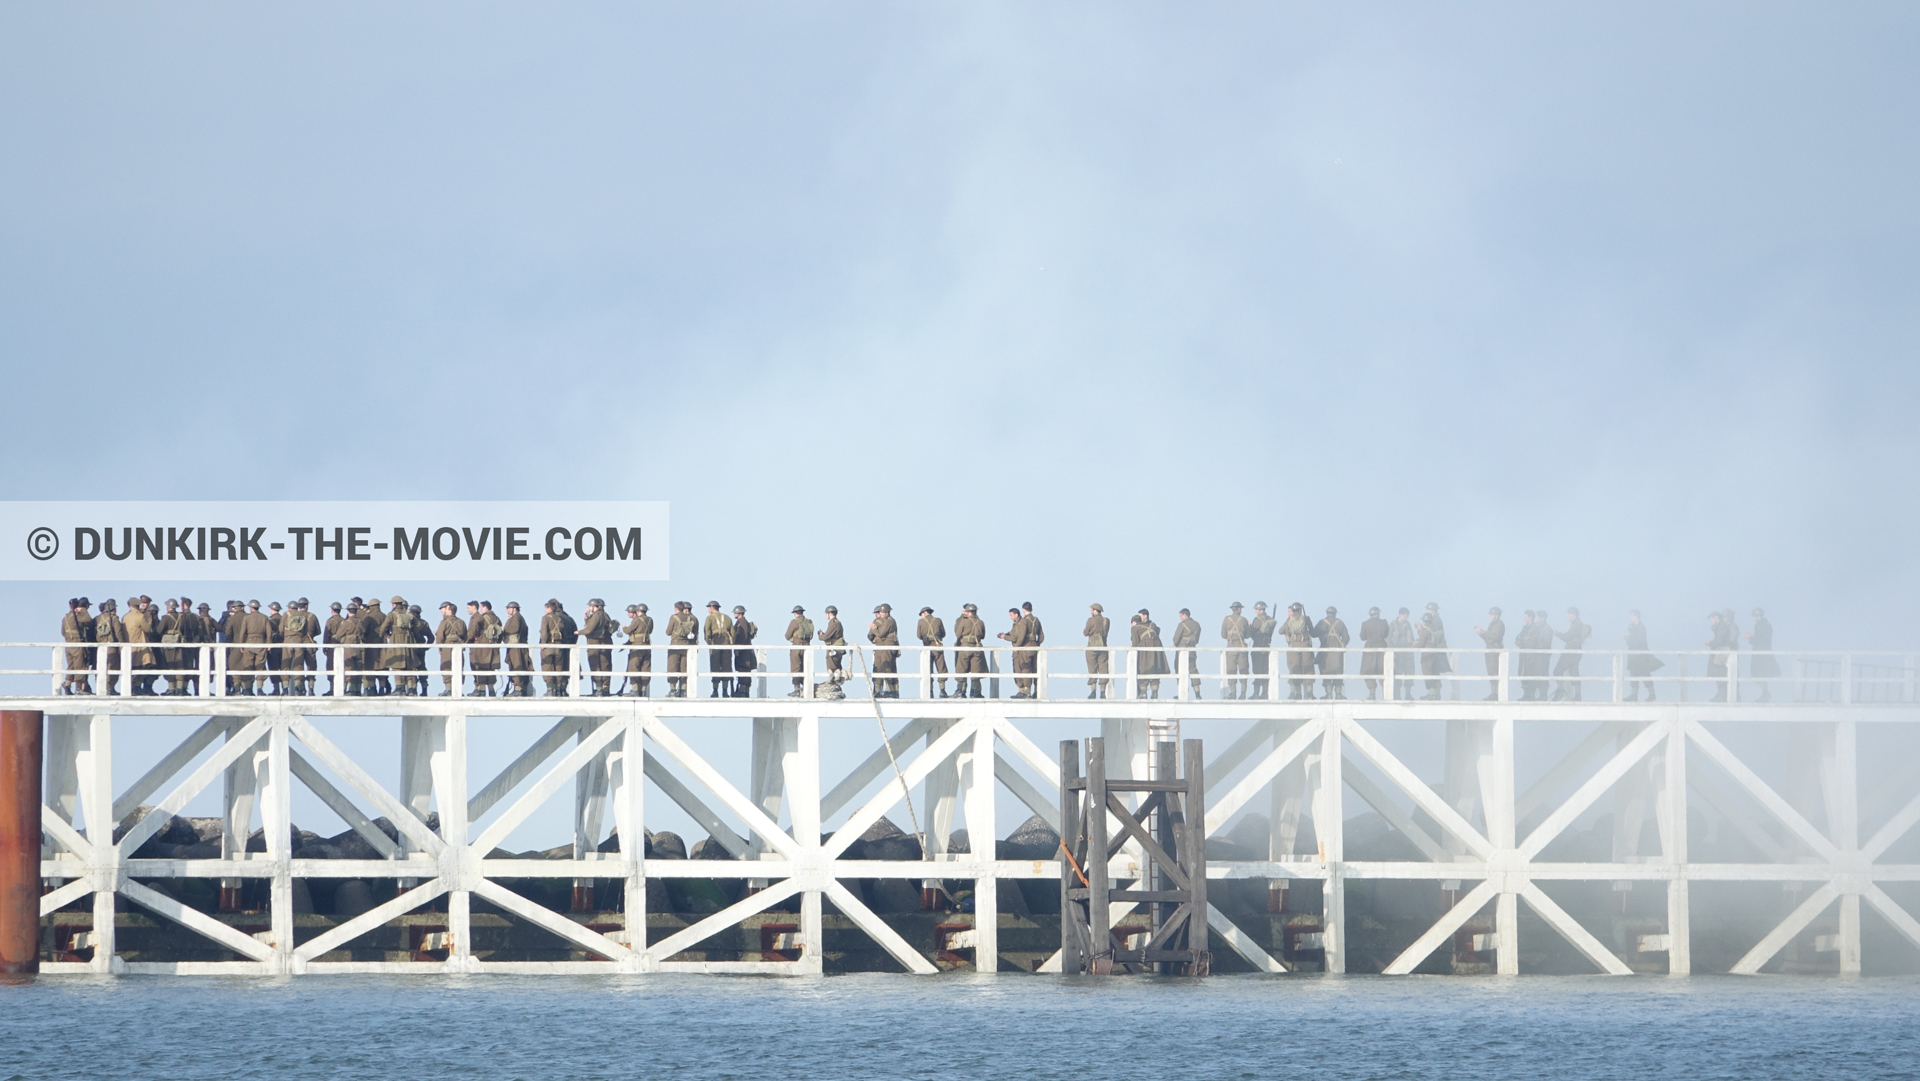 Fotos con extras, humo blanco, muelle del ESTE,  durante el rodaje de la película Dunkerque de Nolan